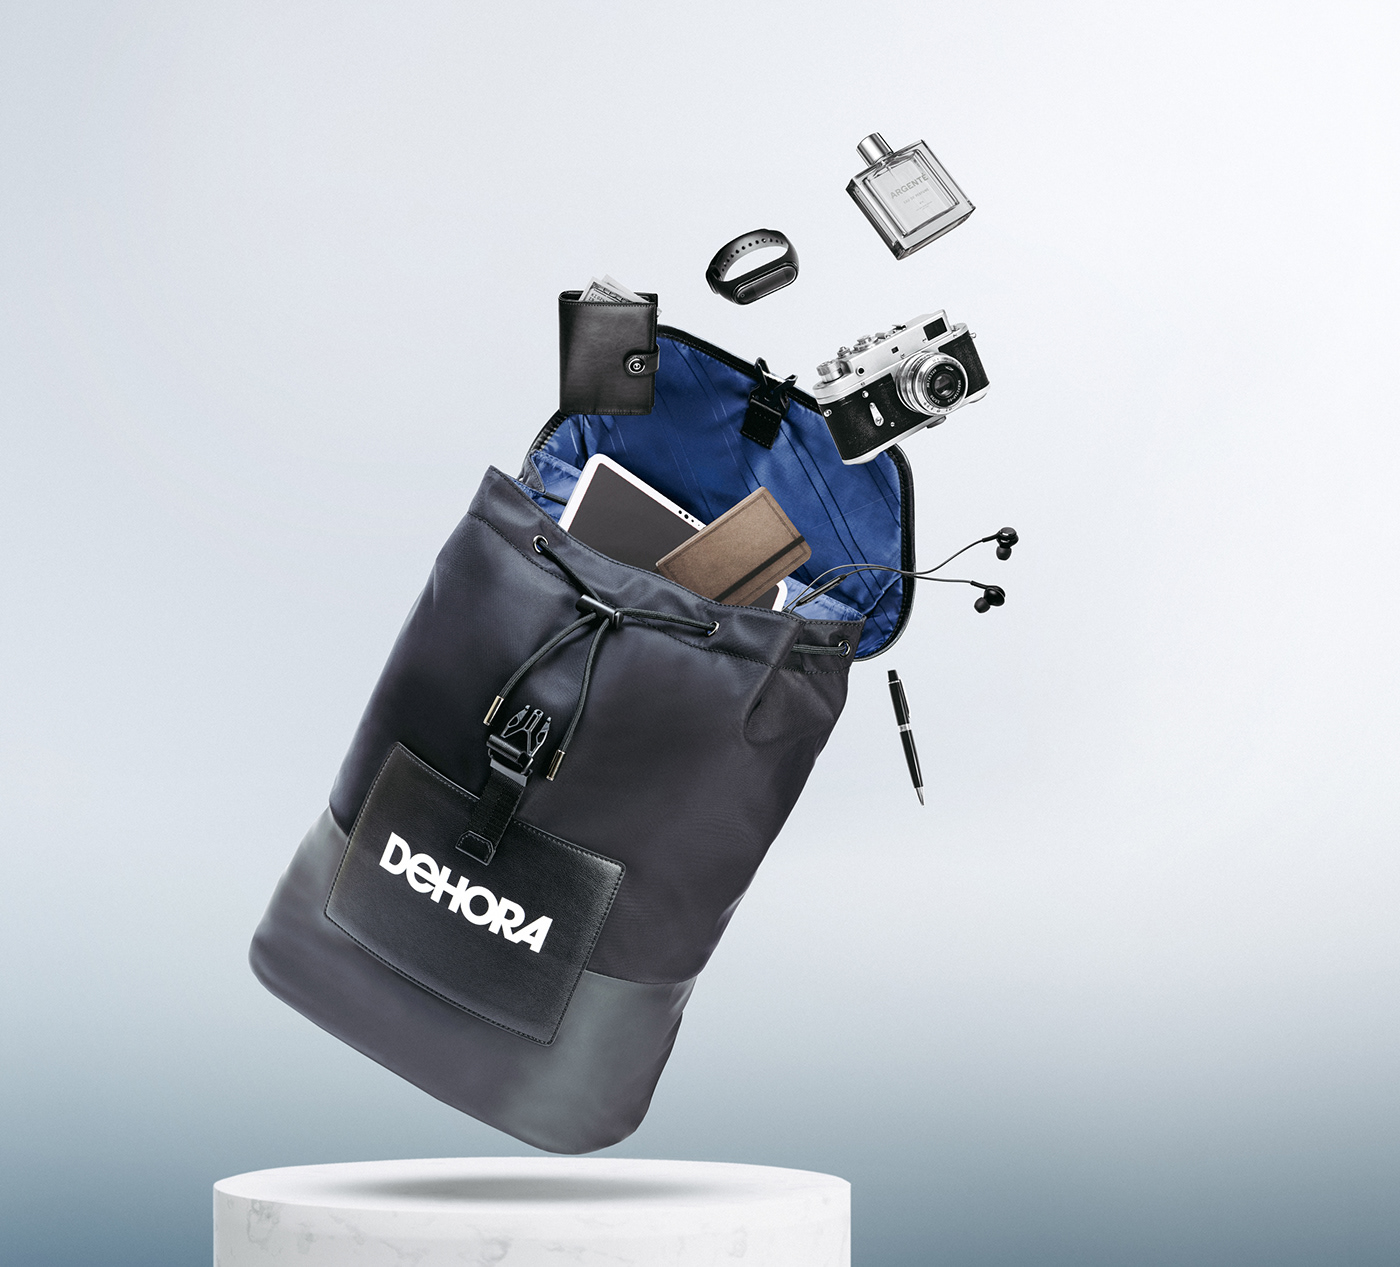 backpack bag bagpack lighting luxury luxurybags Photography  productphotography studioshoot